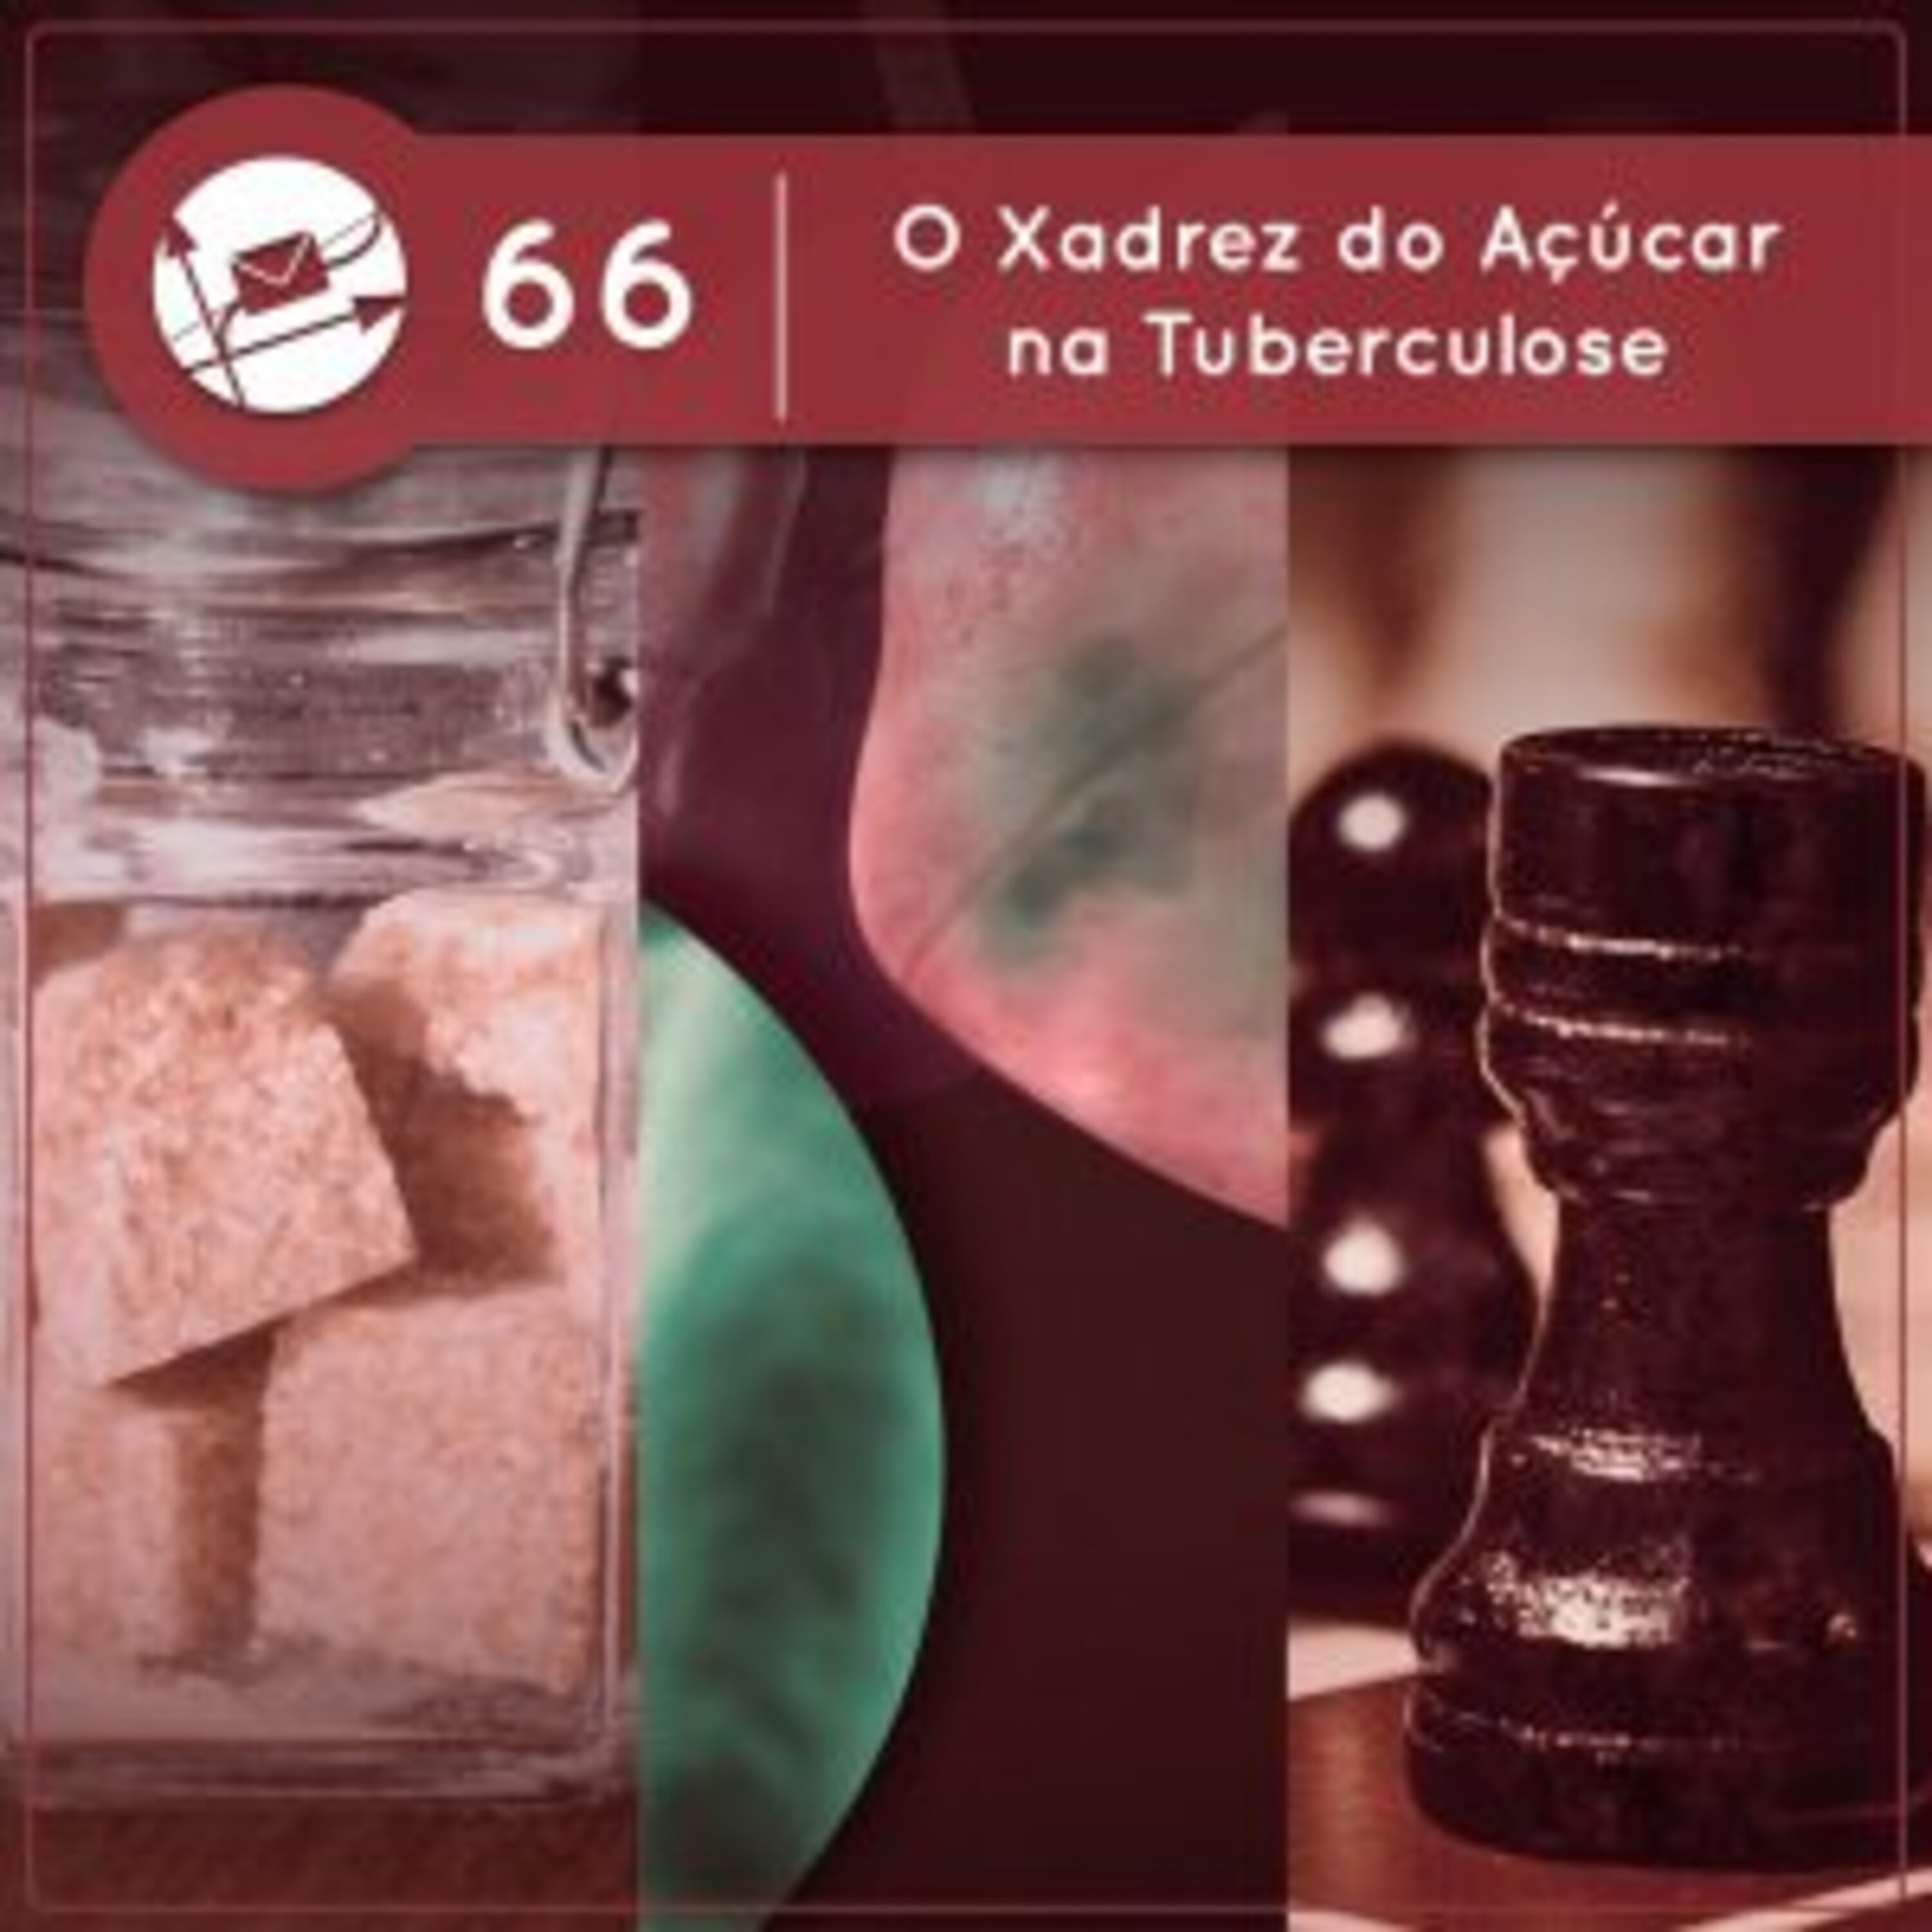 O Xadrez do Açúcar na Tuberculose (Derivadas #66)